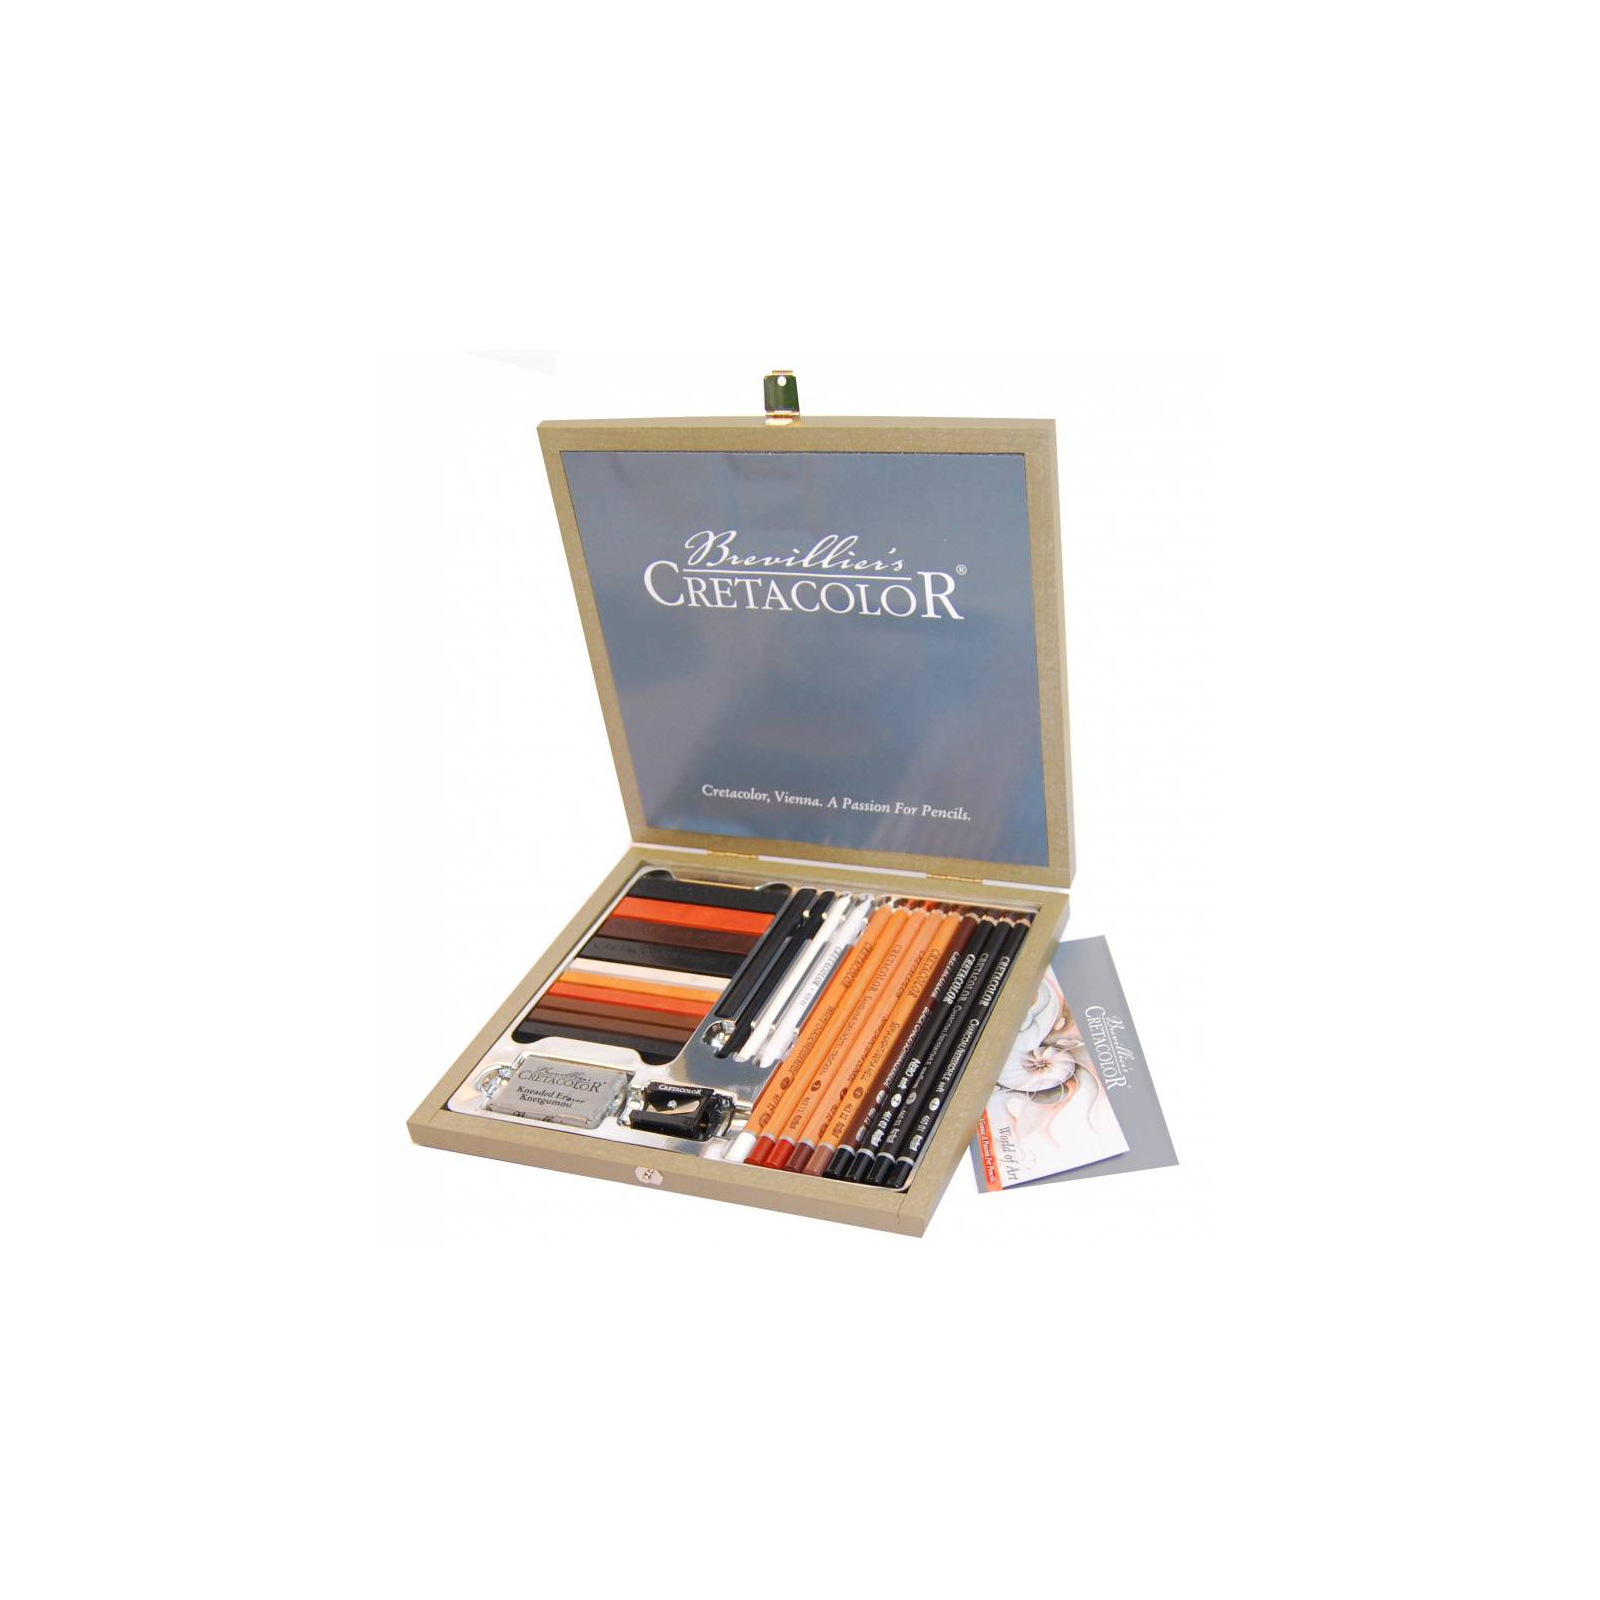 Художественный набор Cretacolor Passion Box, 25 шт., дер. коробка (9014400217853)